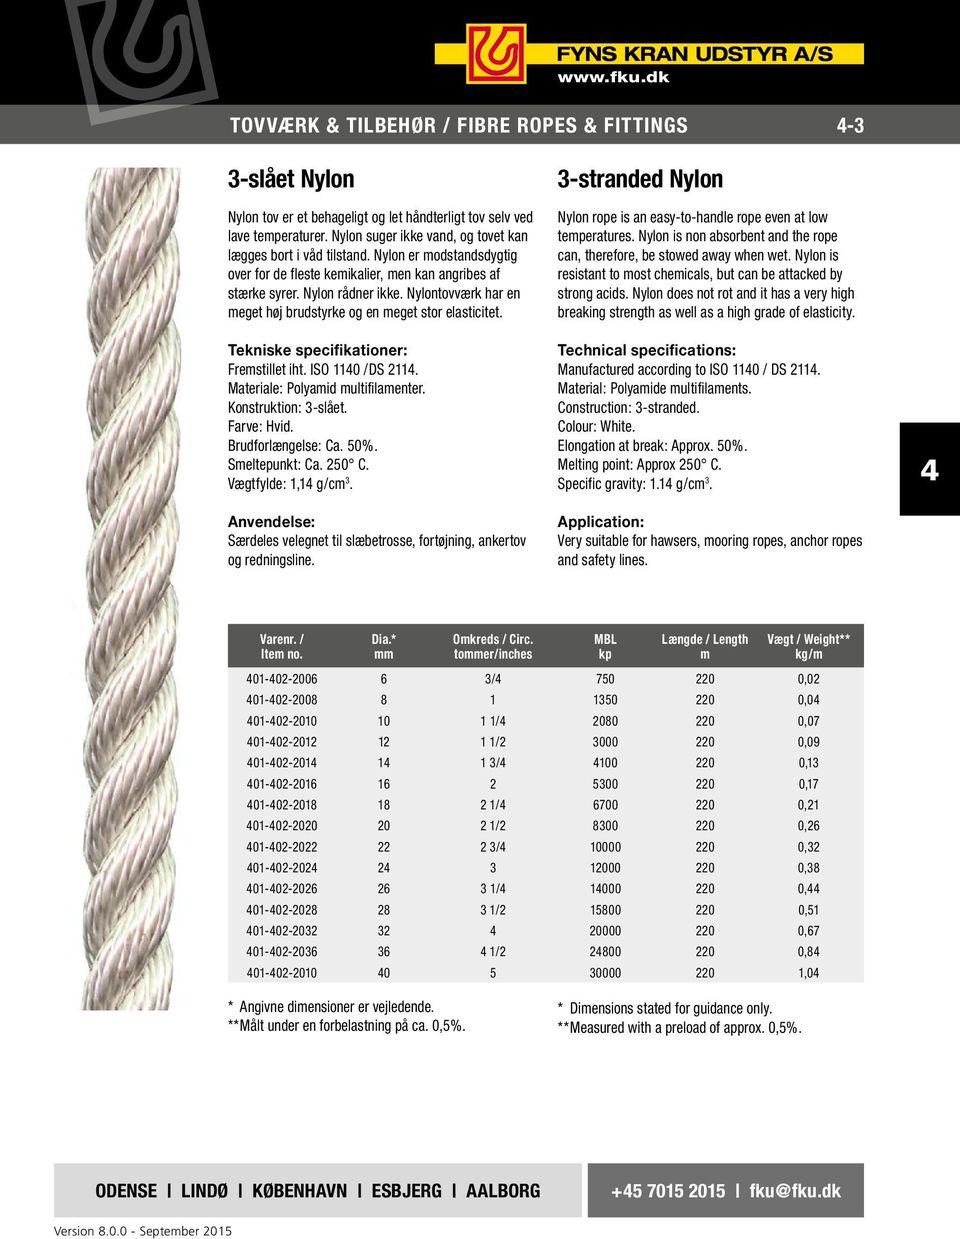 Nylontovværk har en eget høj brudstyrke og en eget stor elasticitet. Tekniske specifikationer: Frestillet iht. ISO 110 /DS 211. Materiale: Polyaid ultifilaenter. Konstruktion: 3-slået. Farve: Hvid.